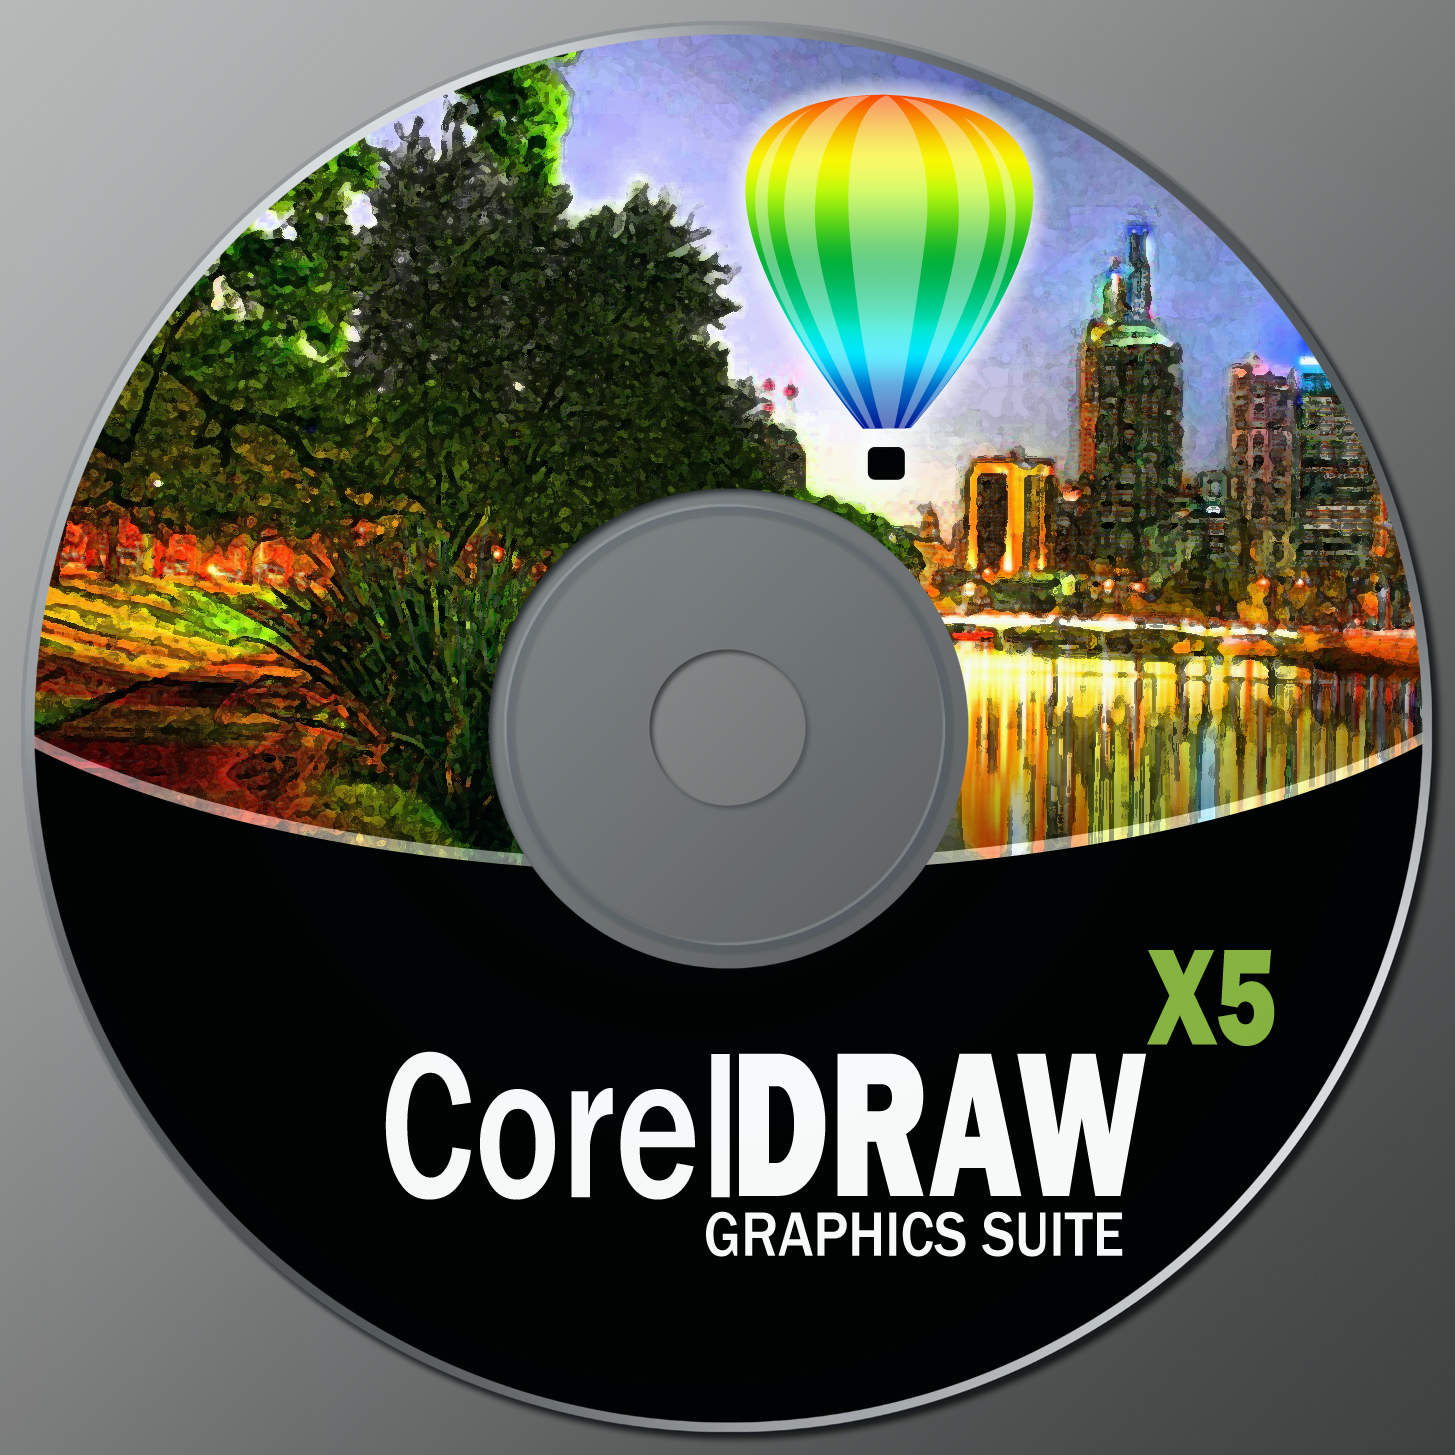 coreldraw x5 full version free download